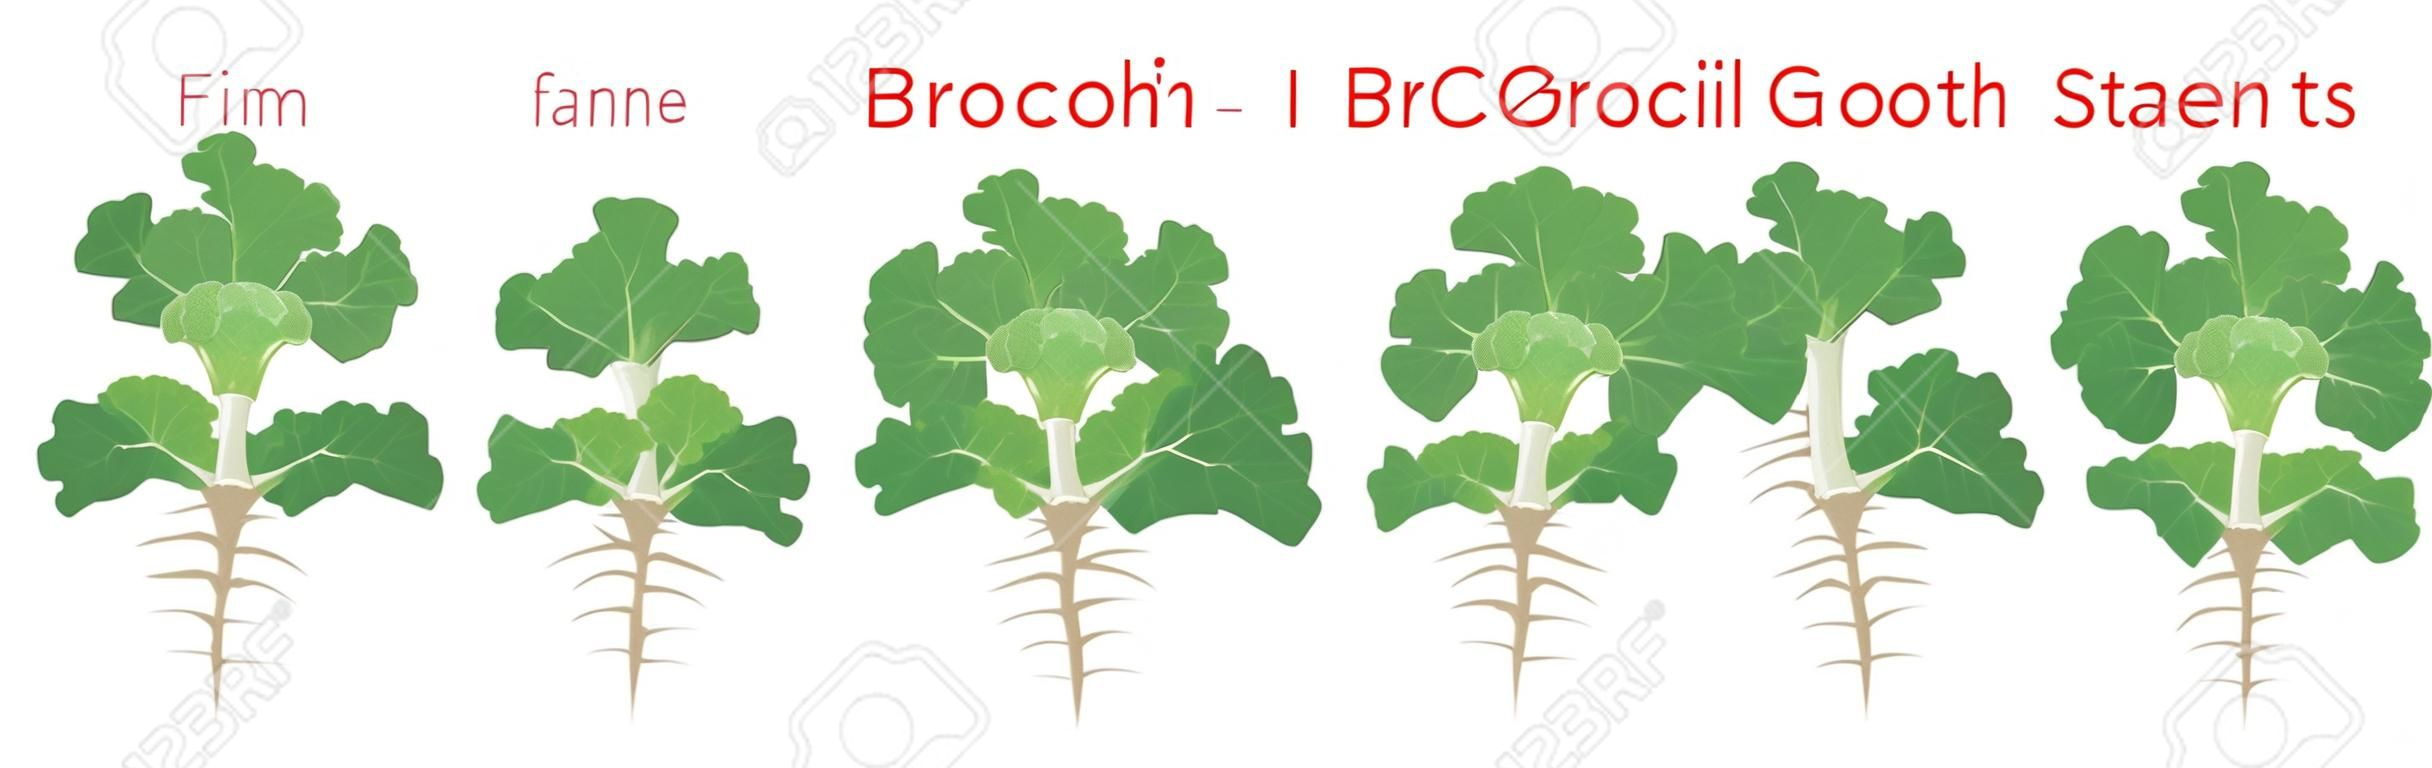 Etapy wzrostu roślin brokułów elementy infografiki. rosnący proces brokułów z nasion, kiełkować do dojrzałej rośliny z korzeniami, cykl życia rośliny izolowanej na białym tle wektor płaska ilustracja